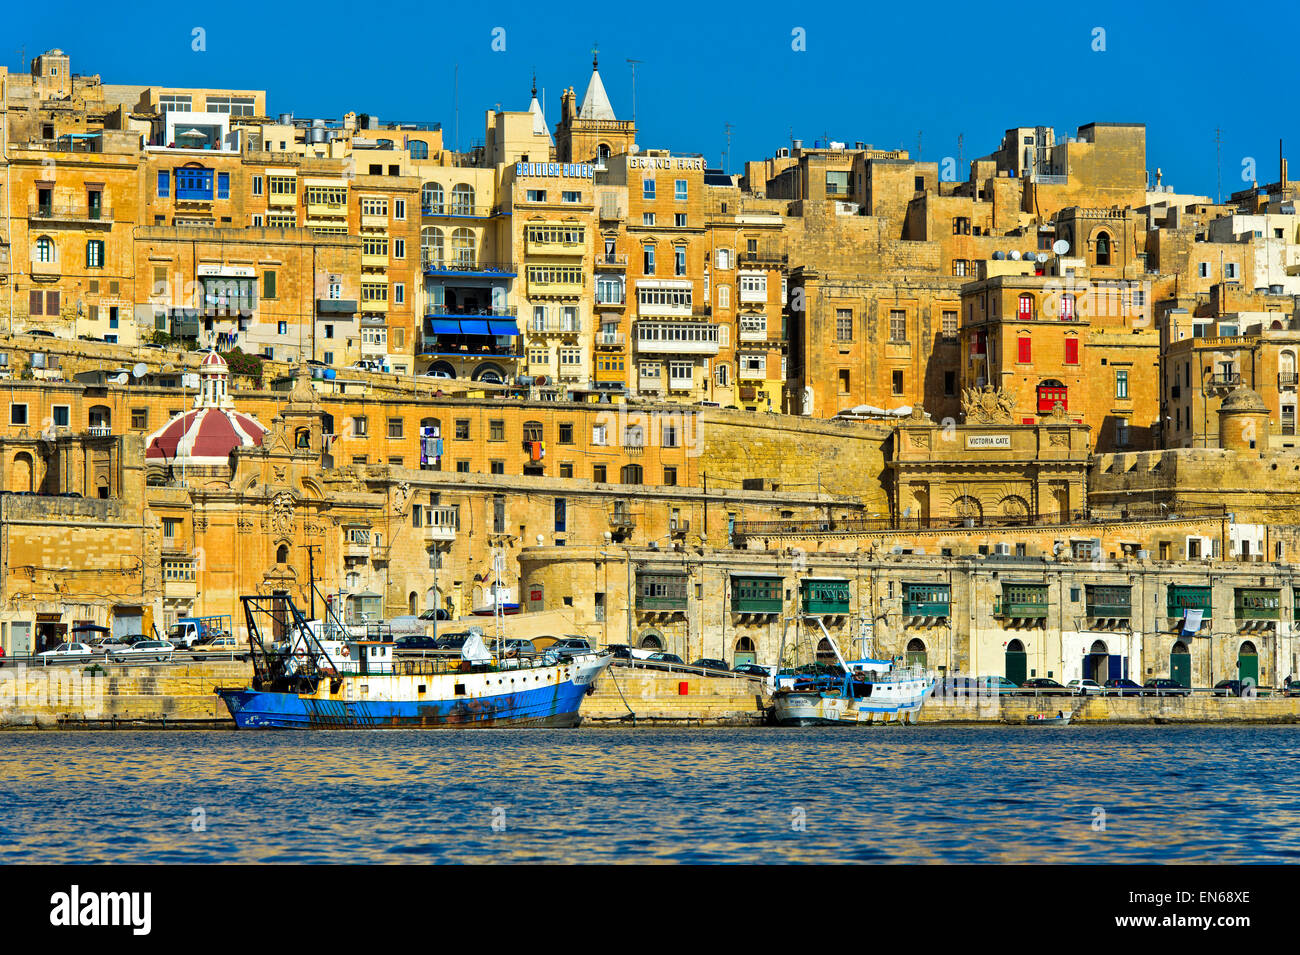 Scenic skyline of the old town of Valletta around the Victoria Gate, Valletta, Malta Stock Photo